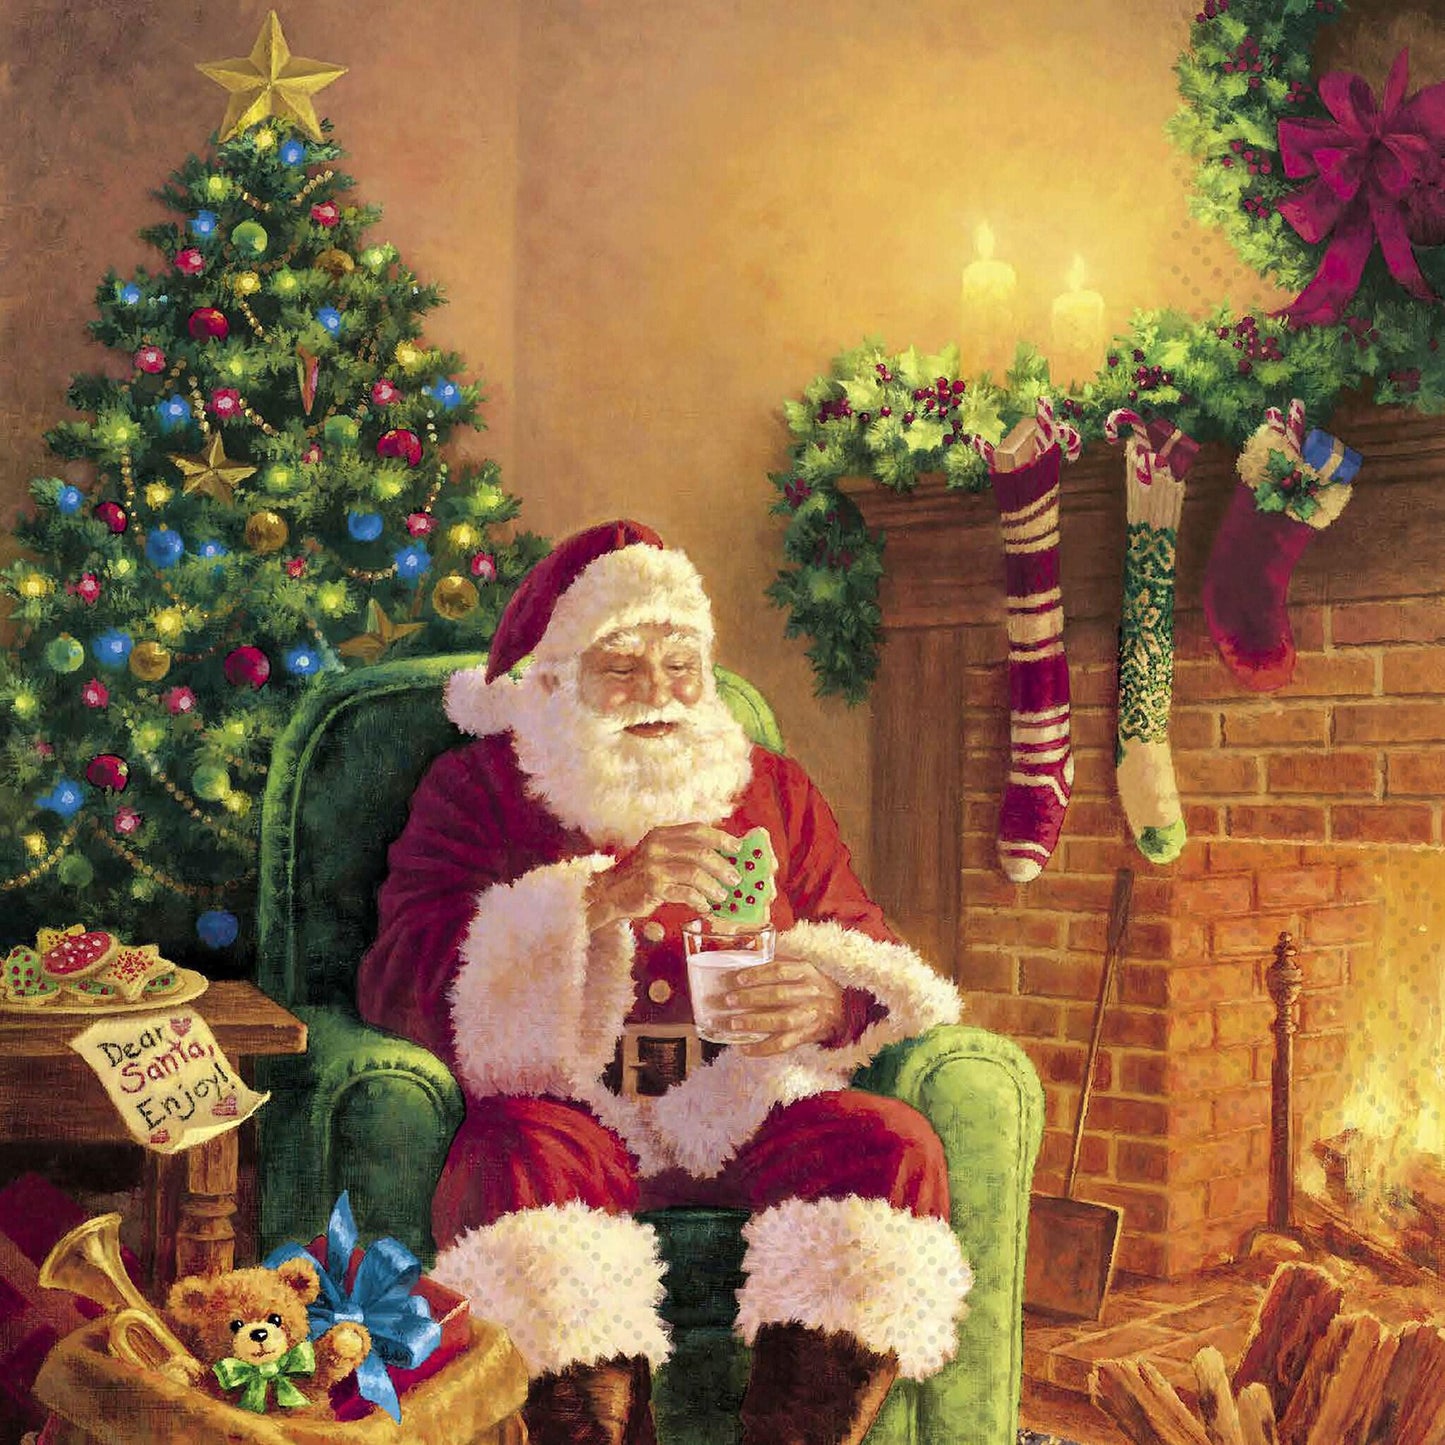 Decoupage Napkin Value Bundle - Santa Claus